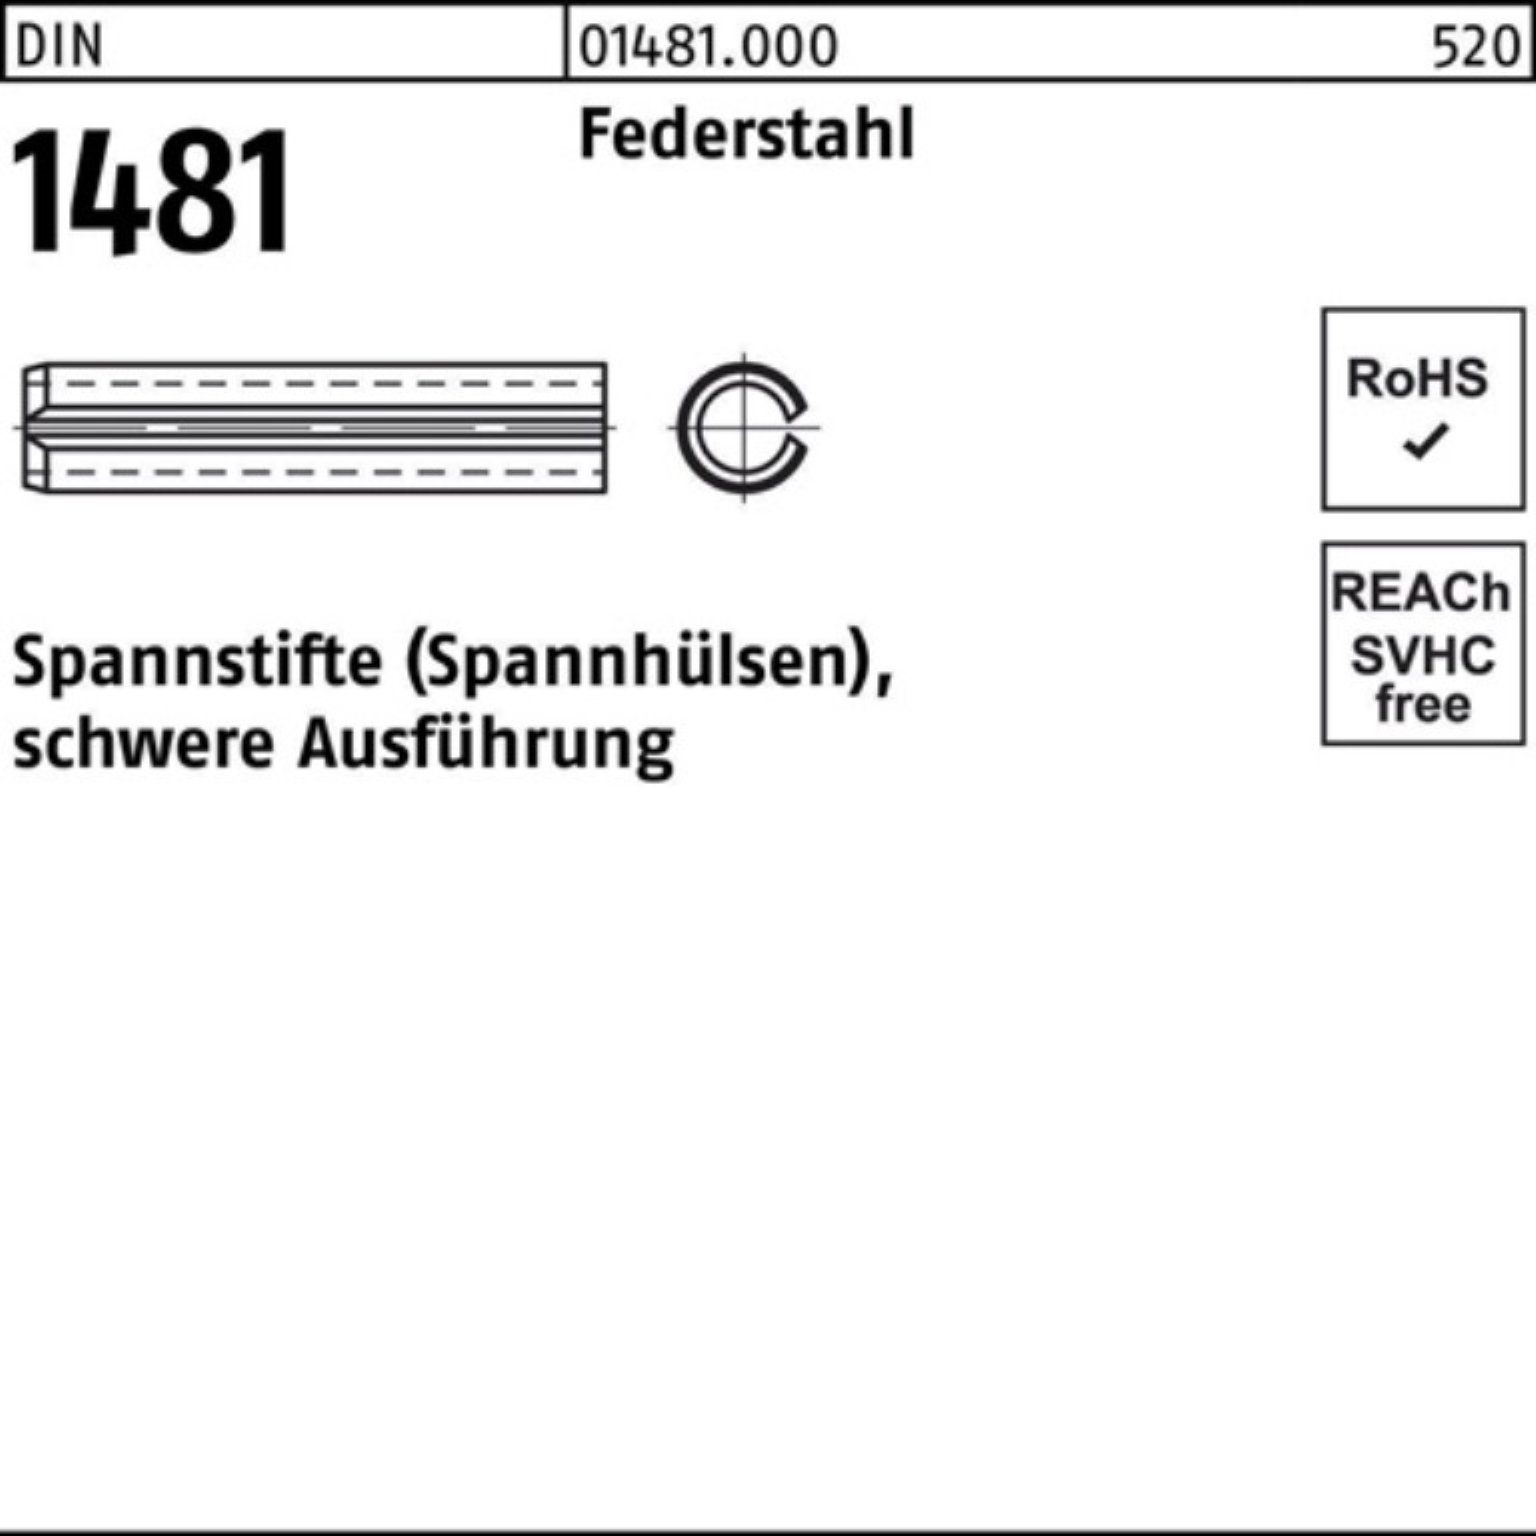 Federstahl Pack Spannstift Ausführung Reyher 80 Spannstift 2 14x 1481 DIN schwere 100er